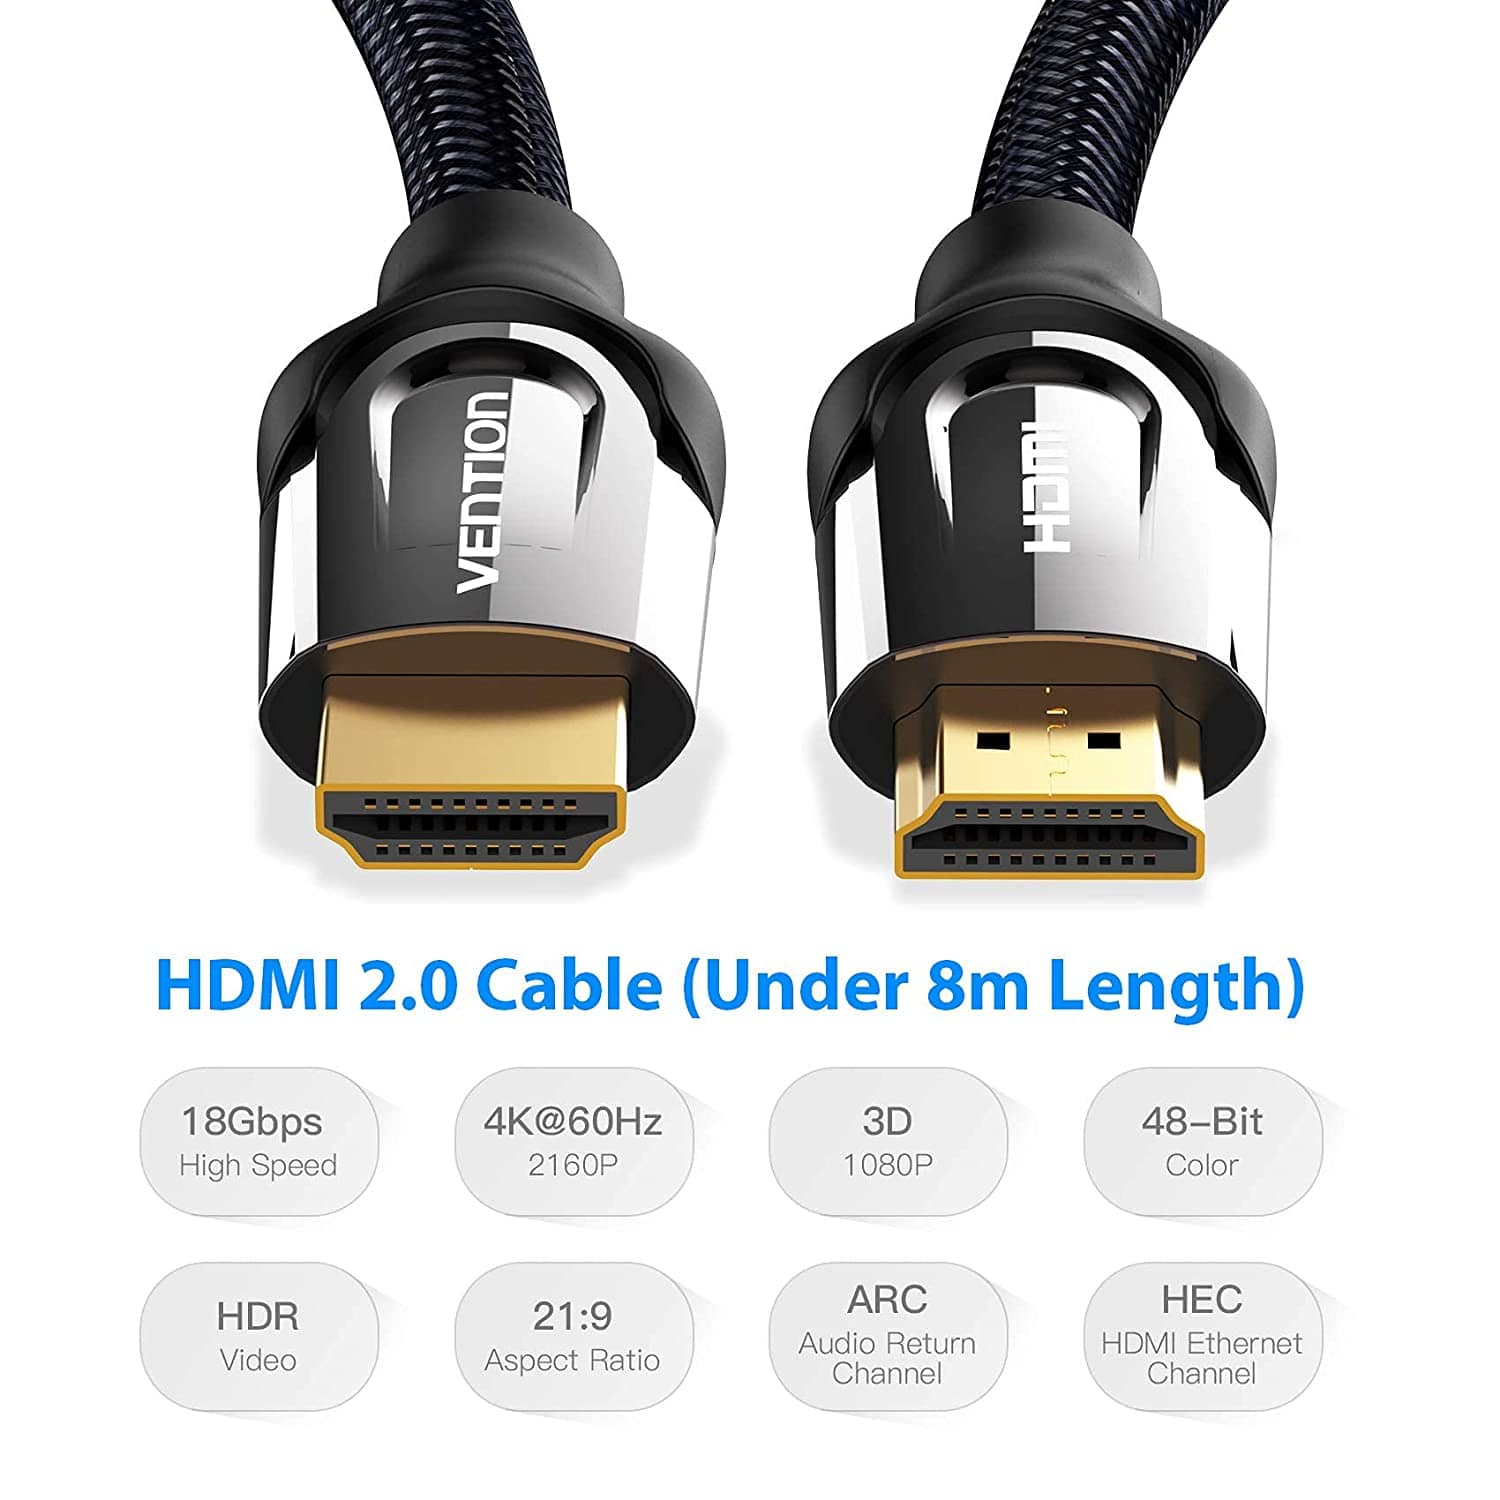 HDMI 2.0, M/M cable, Nylon braid, 4K, 3M